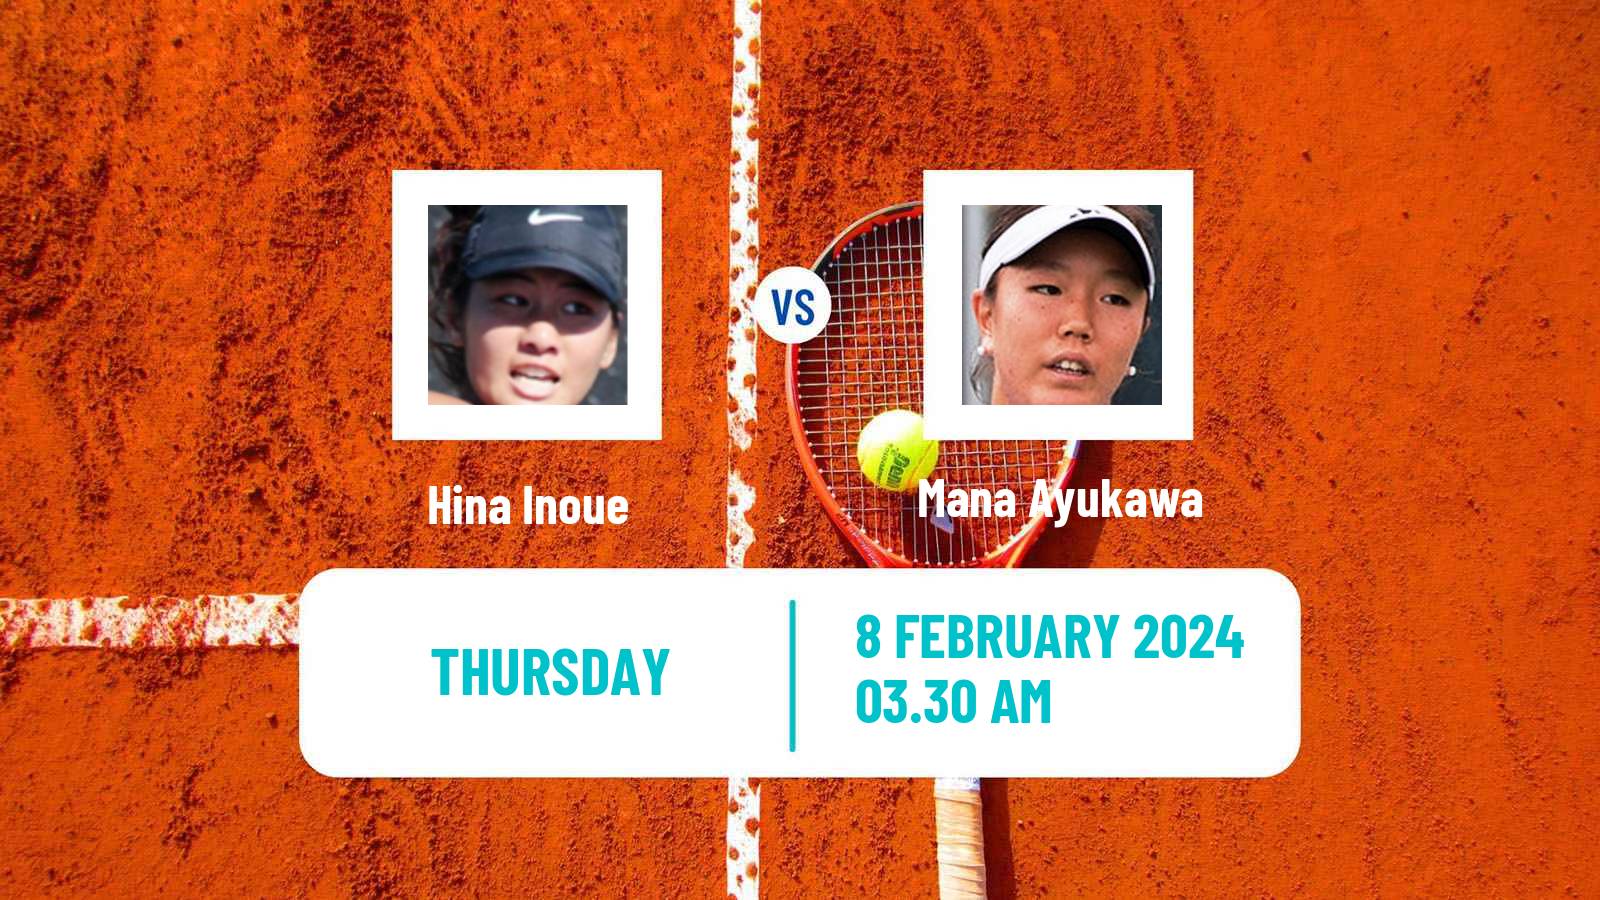 Tennis ITF W15 Monastir 4 Women Hina Inoue - Mana Ayukawa